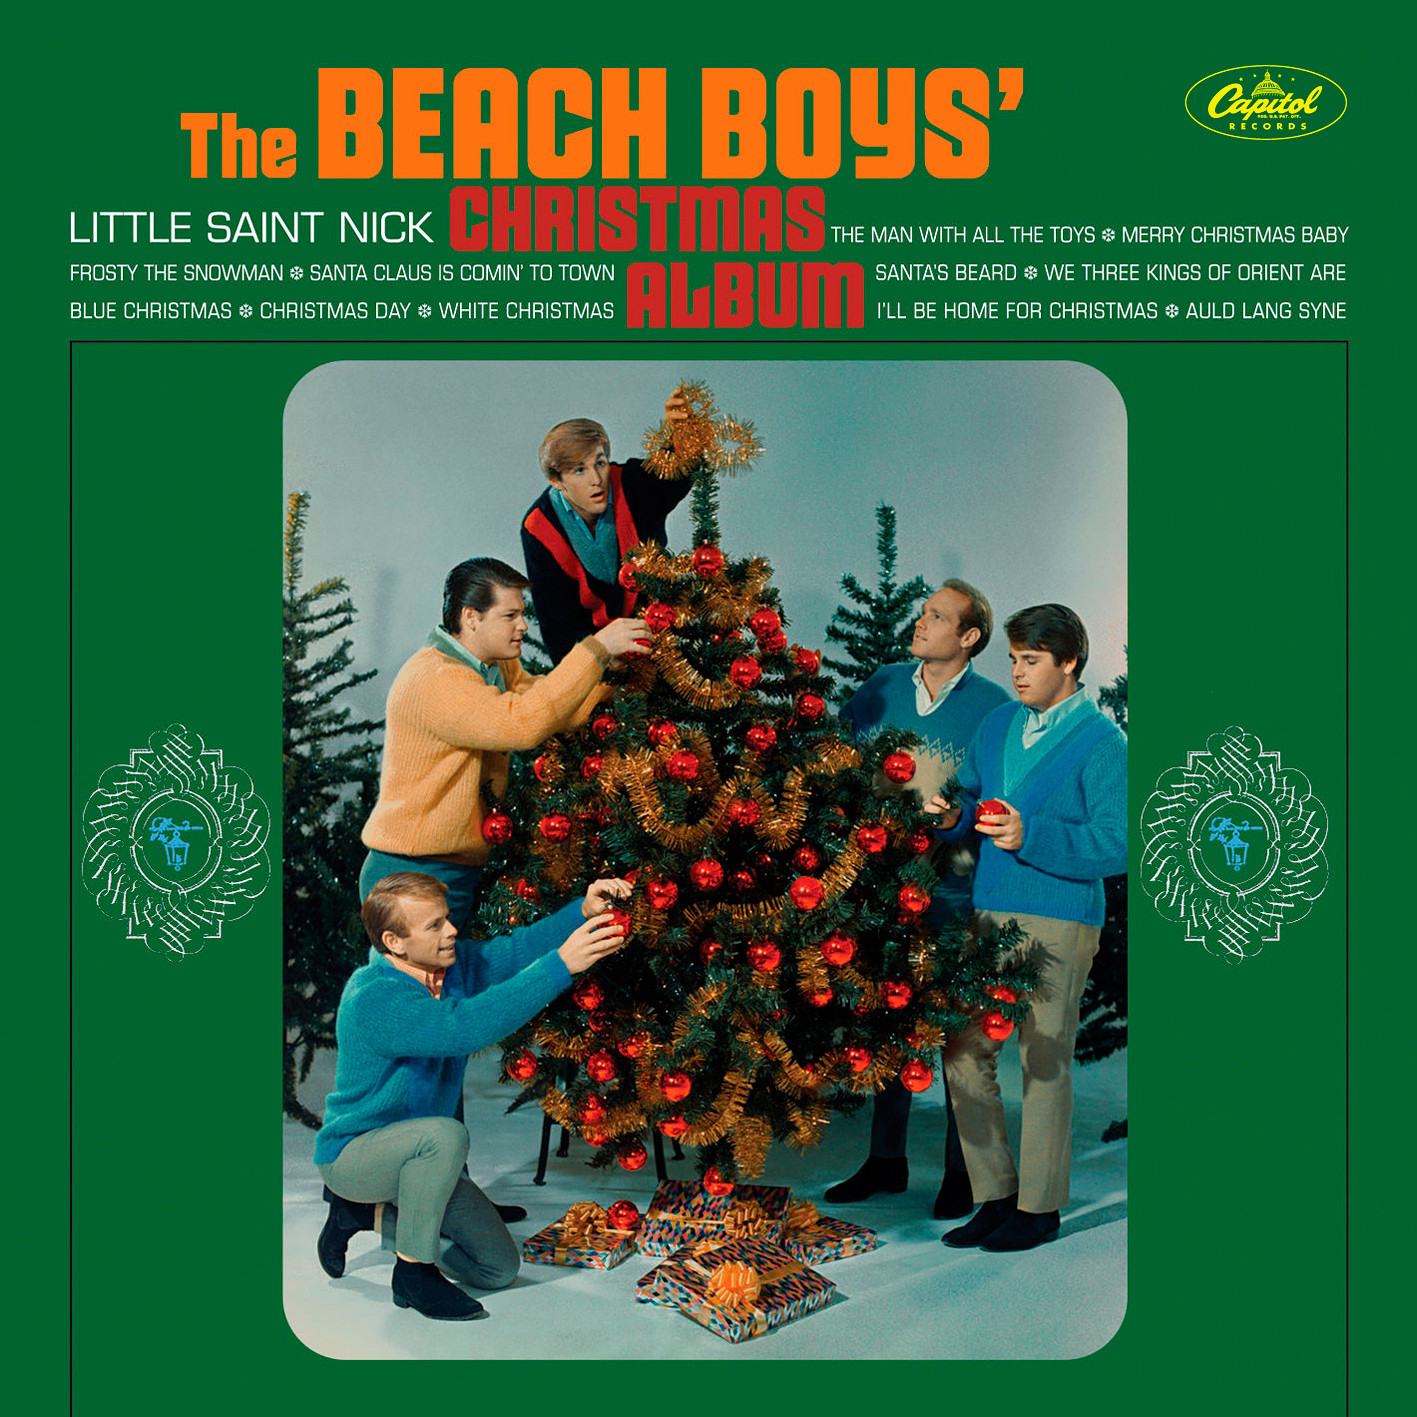 The Beach Boys - Christmas Album (1964/2015) [HDTracks FLAC 24bit/192kHz]